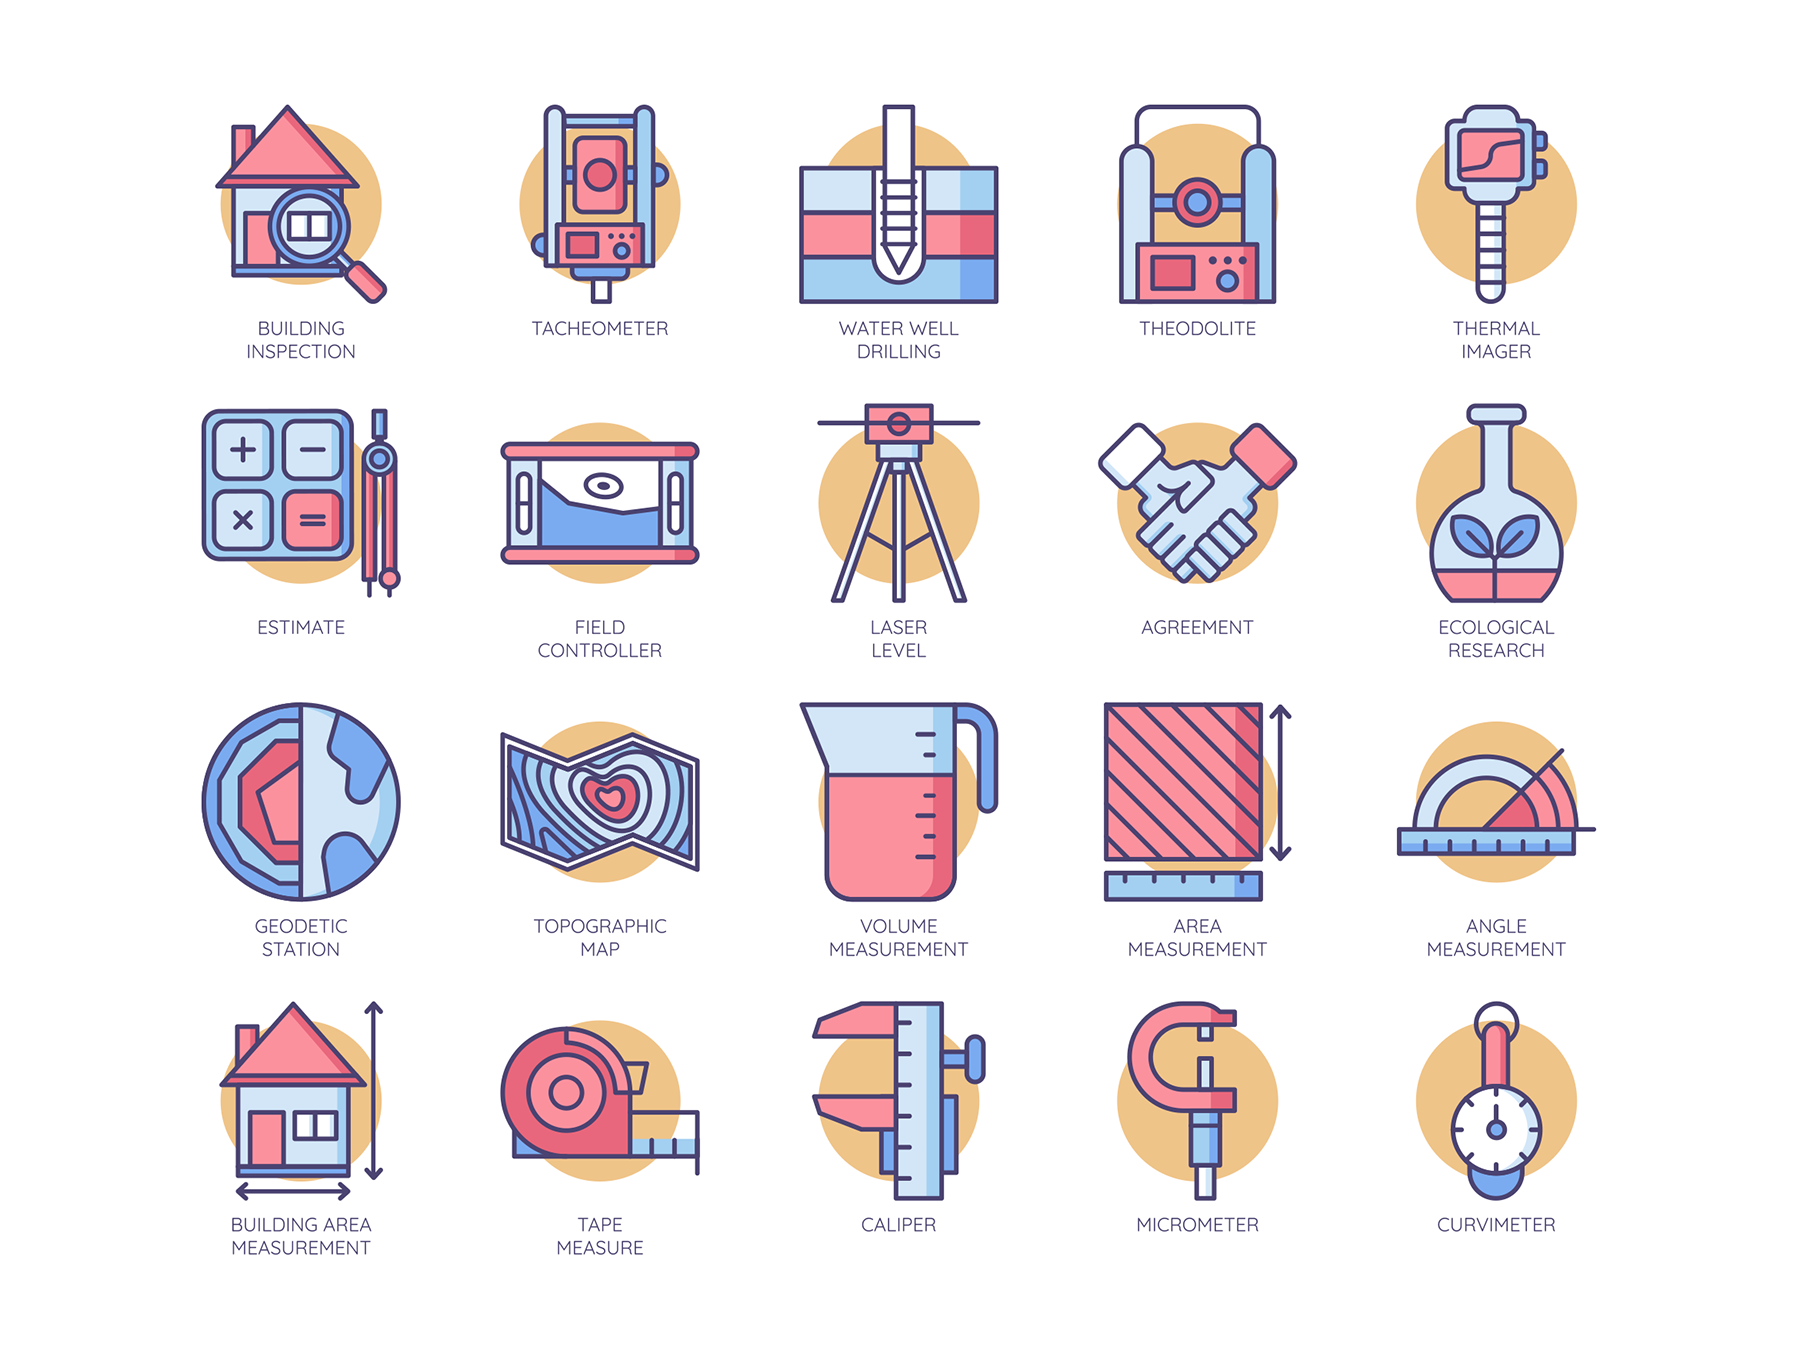 70个手绘彩色矢量工程图标素材 70 engineering icons